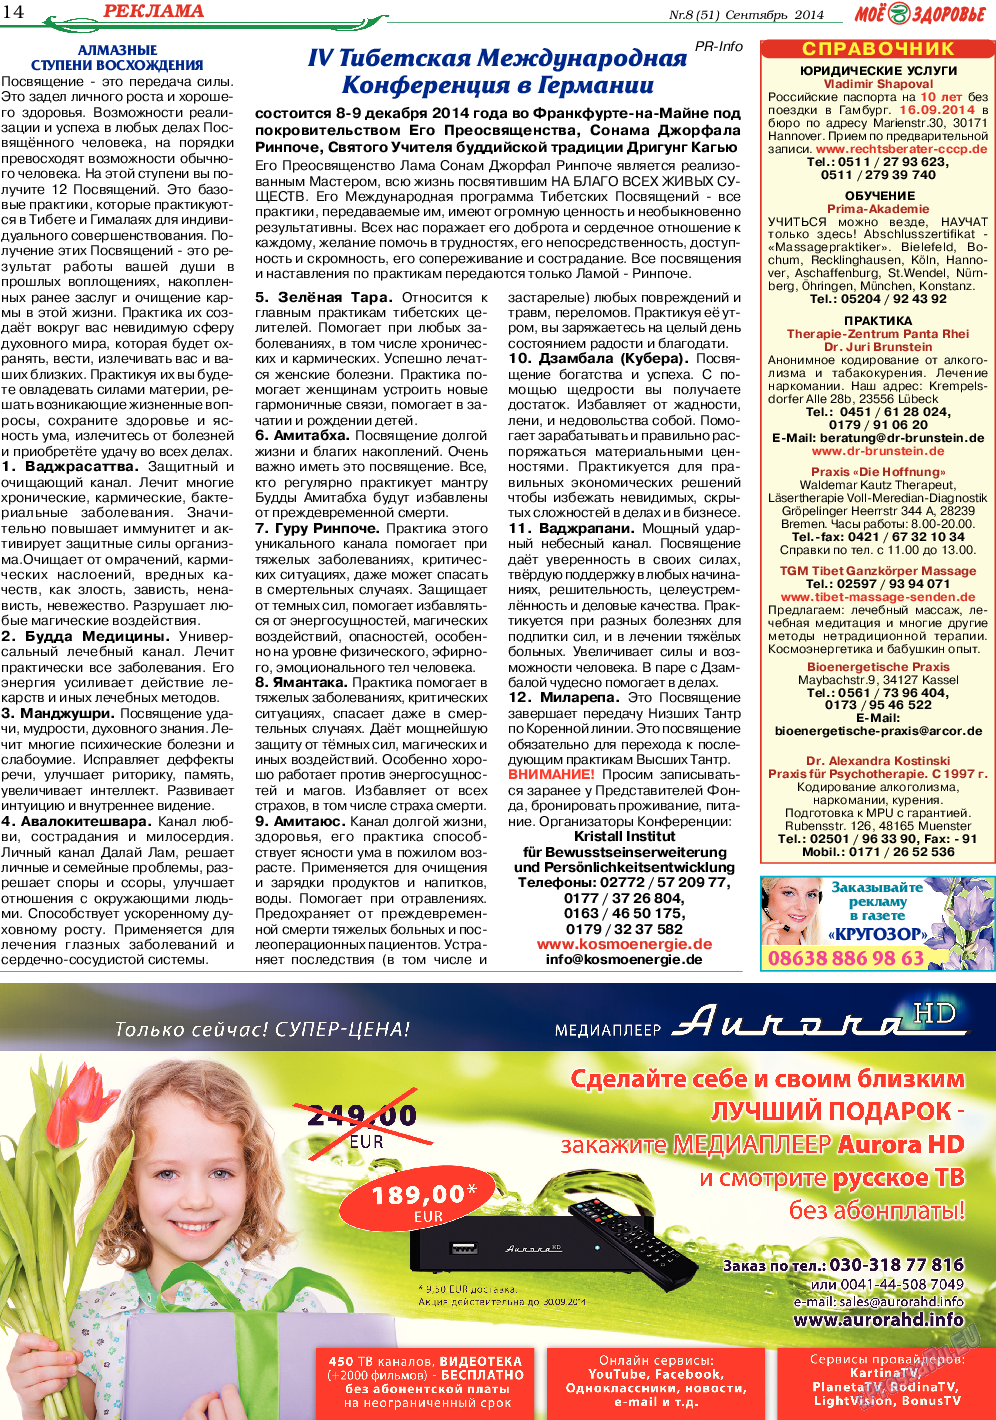 Кругозор, газета. 2014 №9 стр.14